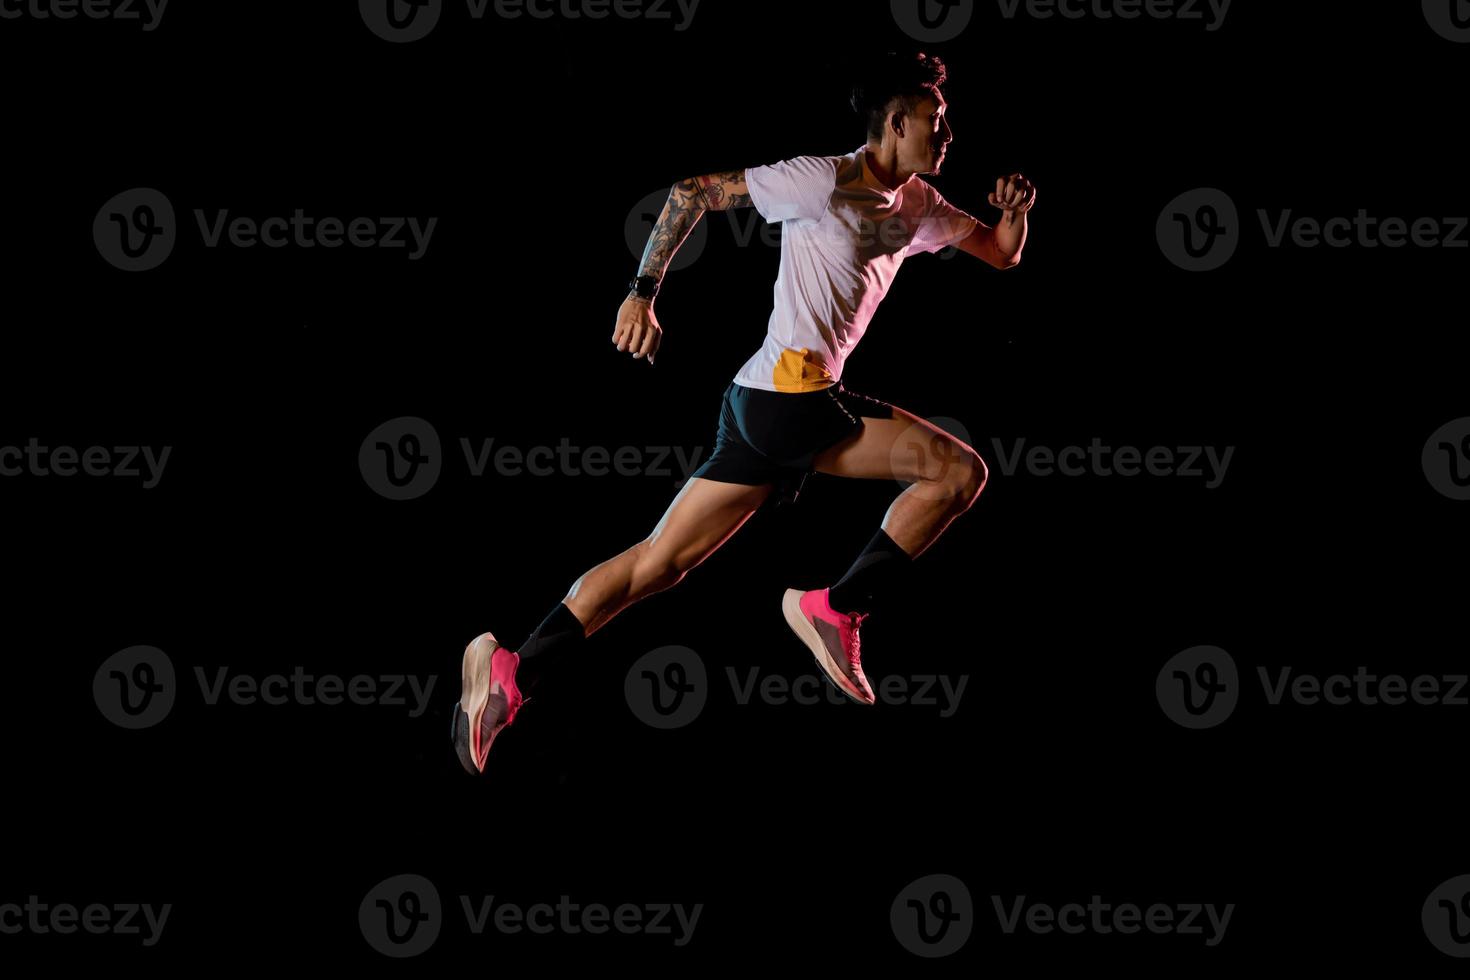 jovem corredor velocista asiático correndo no estúdio em fundo preto foto